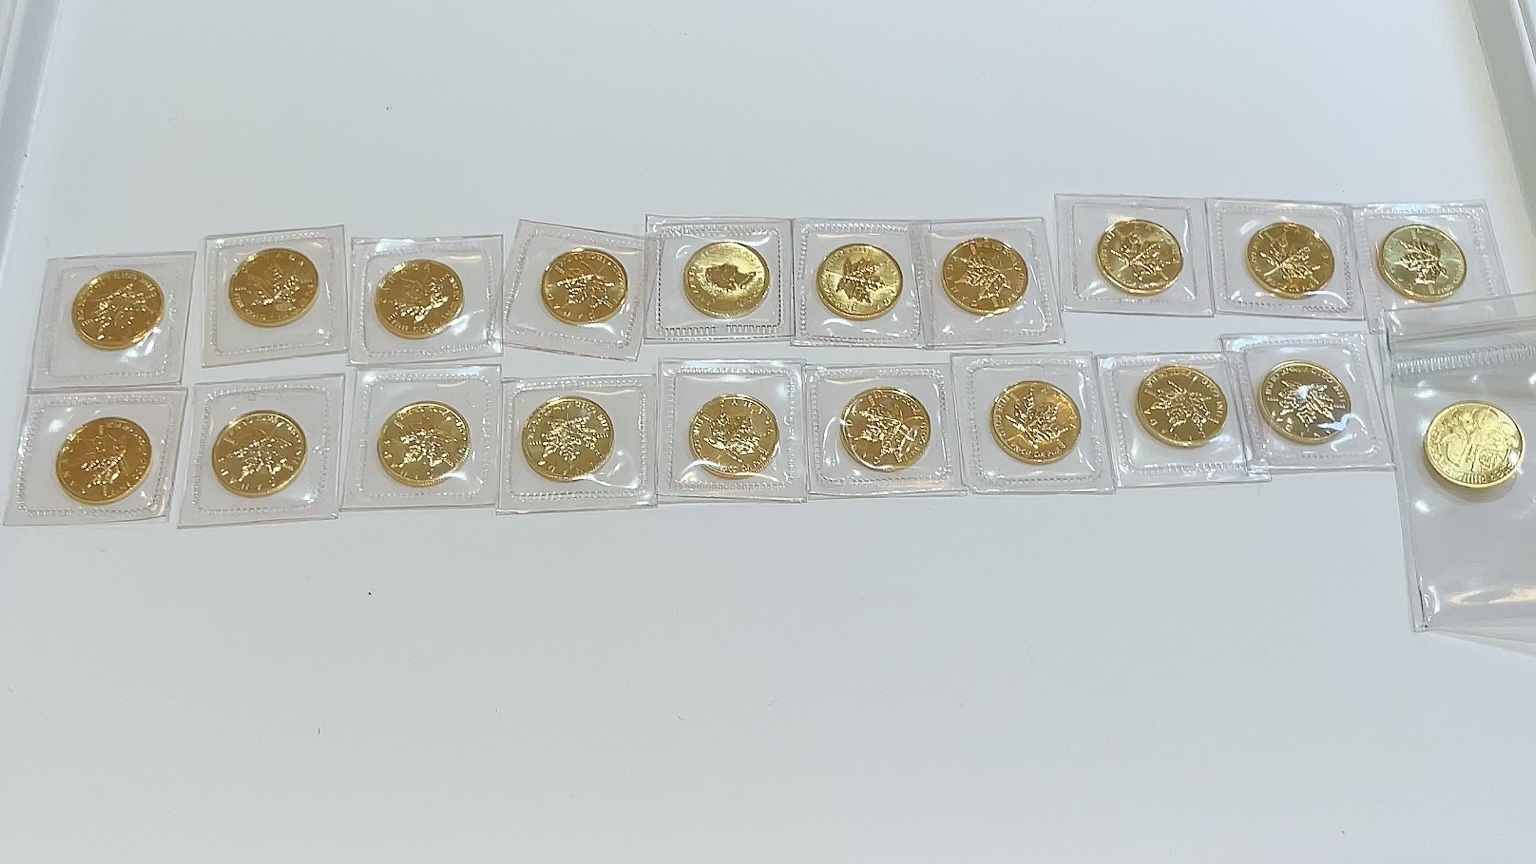 【買取速報】コイン、メイプルリーフ、金貨、999.9、K24YG、純金